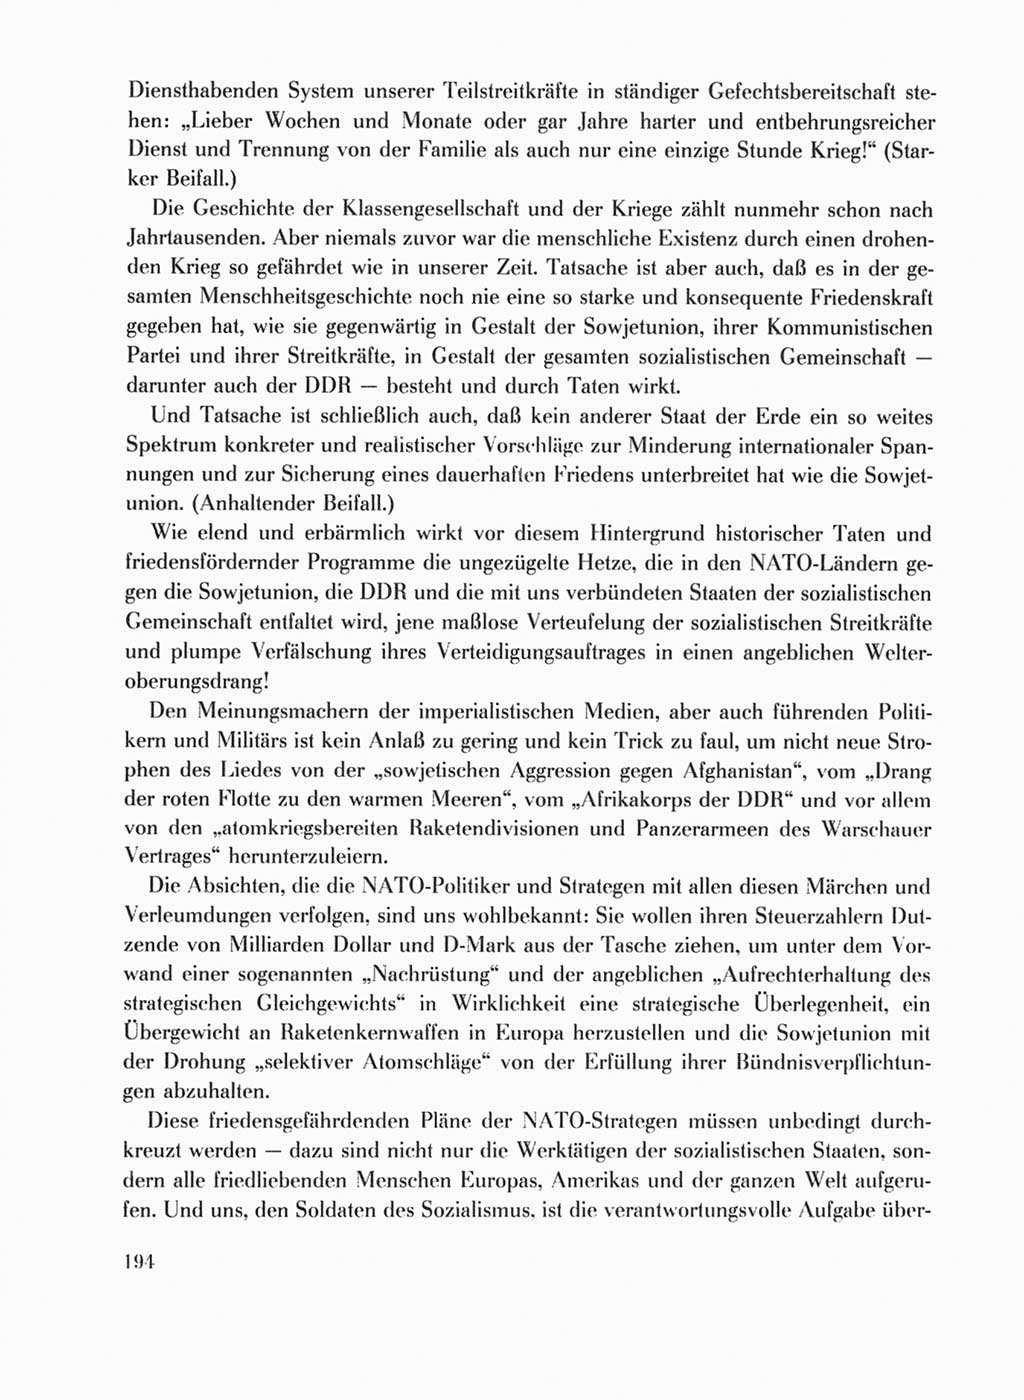 Protokoll der Verhandlungen des Ⅹ. Parteitages der Sozialistischen Einheitspartei Deutschlands (SED) [Deutsche Demokratische Republik (DDR)] 1981, Band 1, Seite 194 (Prot. Verh. Ⅹ. PT SED DDR 1981, Bd. 1, S. 194)